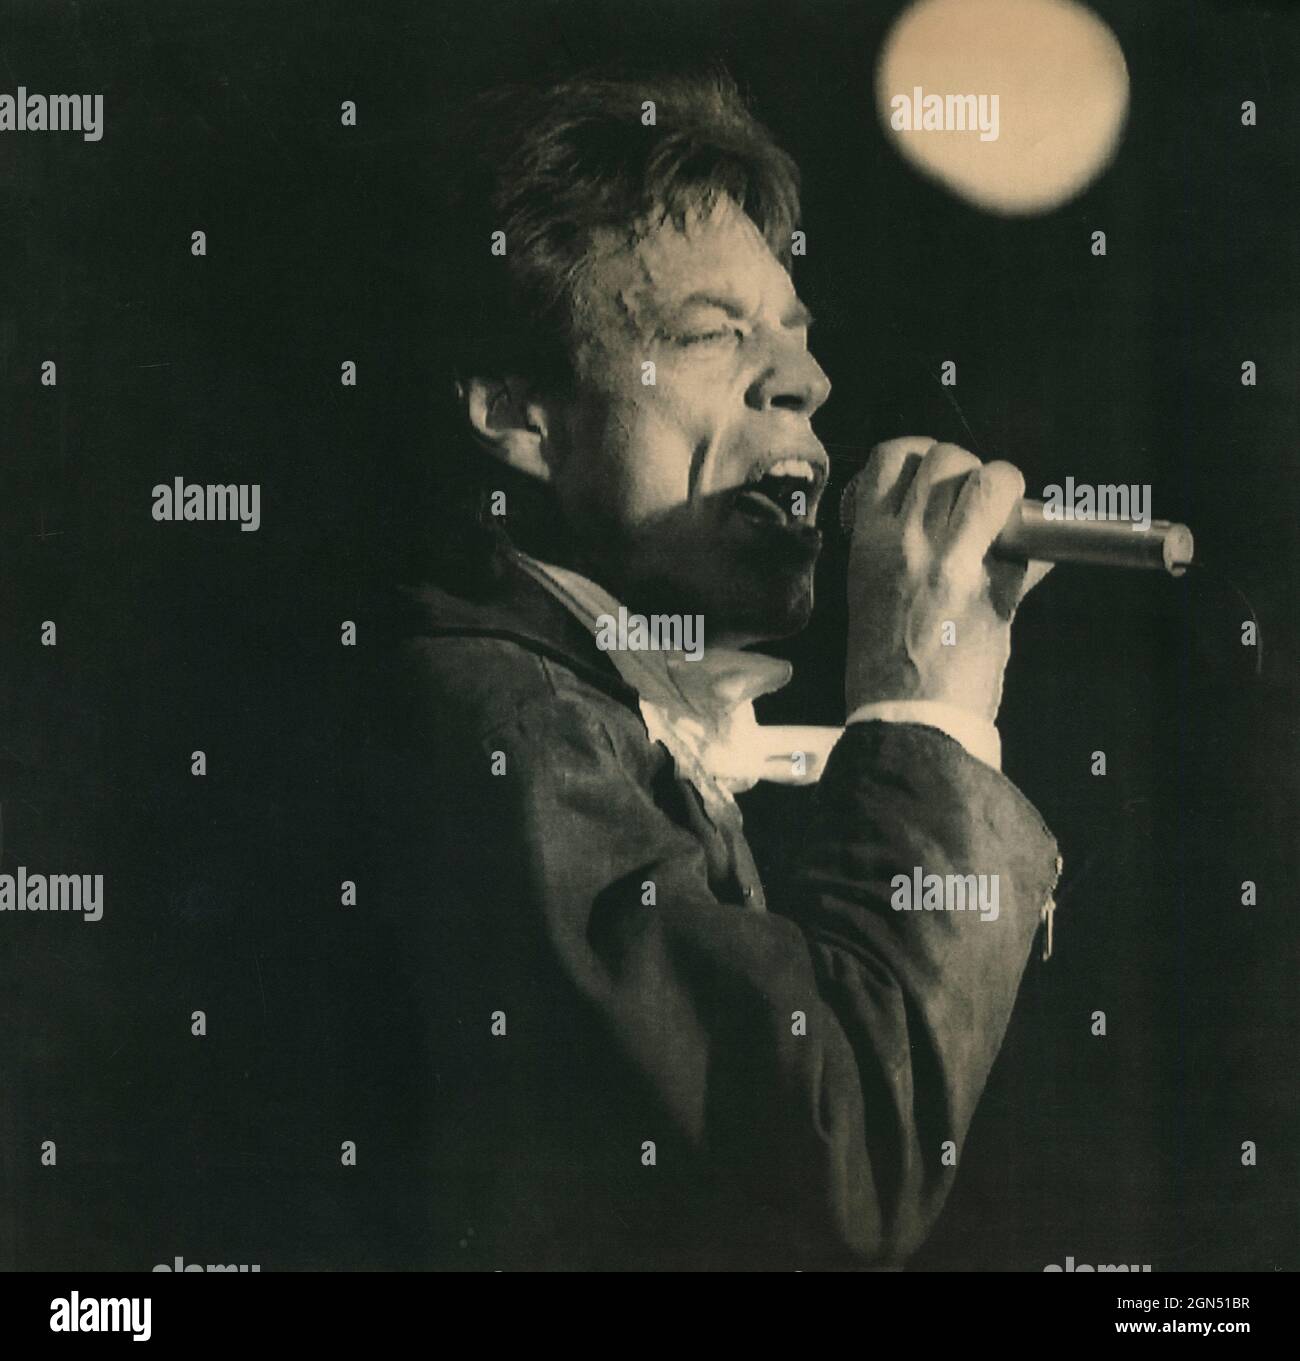 Le musicien anglais Mick Jagger à un concert, 1989 Banque D'Images